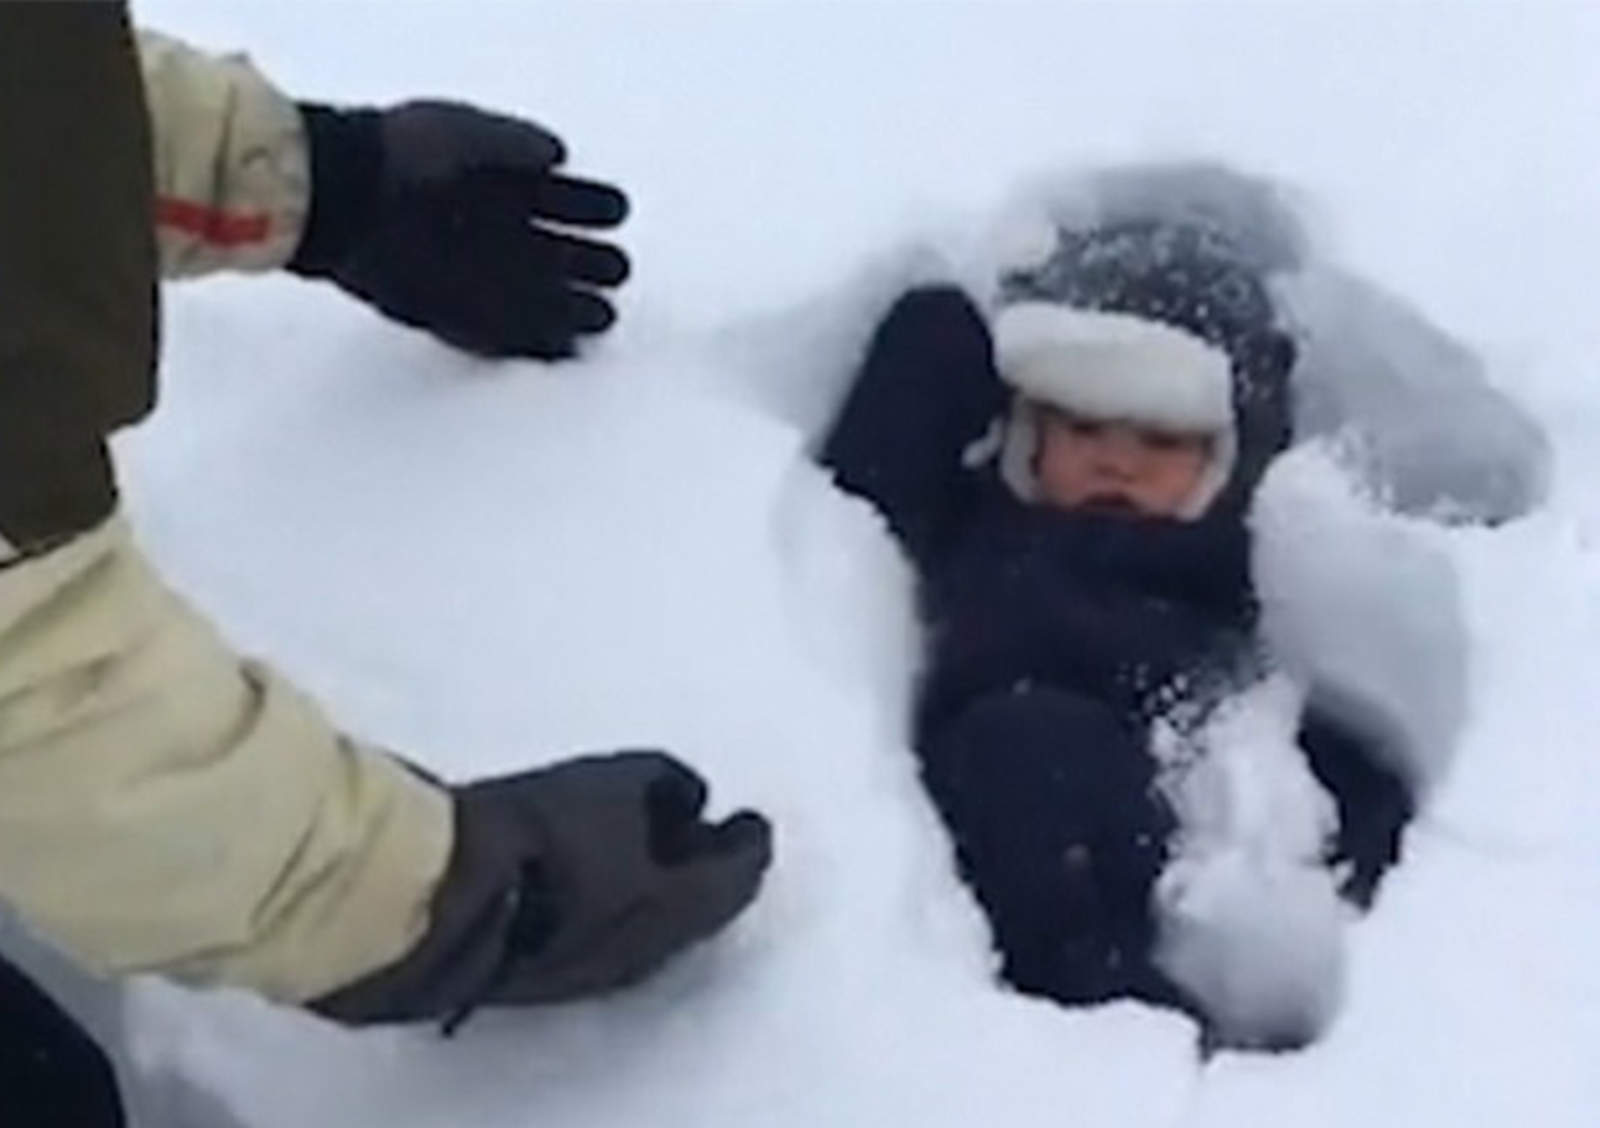 Padre suelta a su bebé sobre la nieve y desaparece